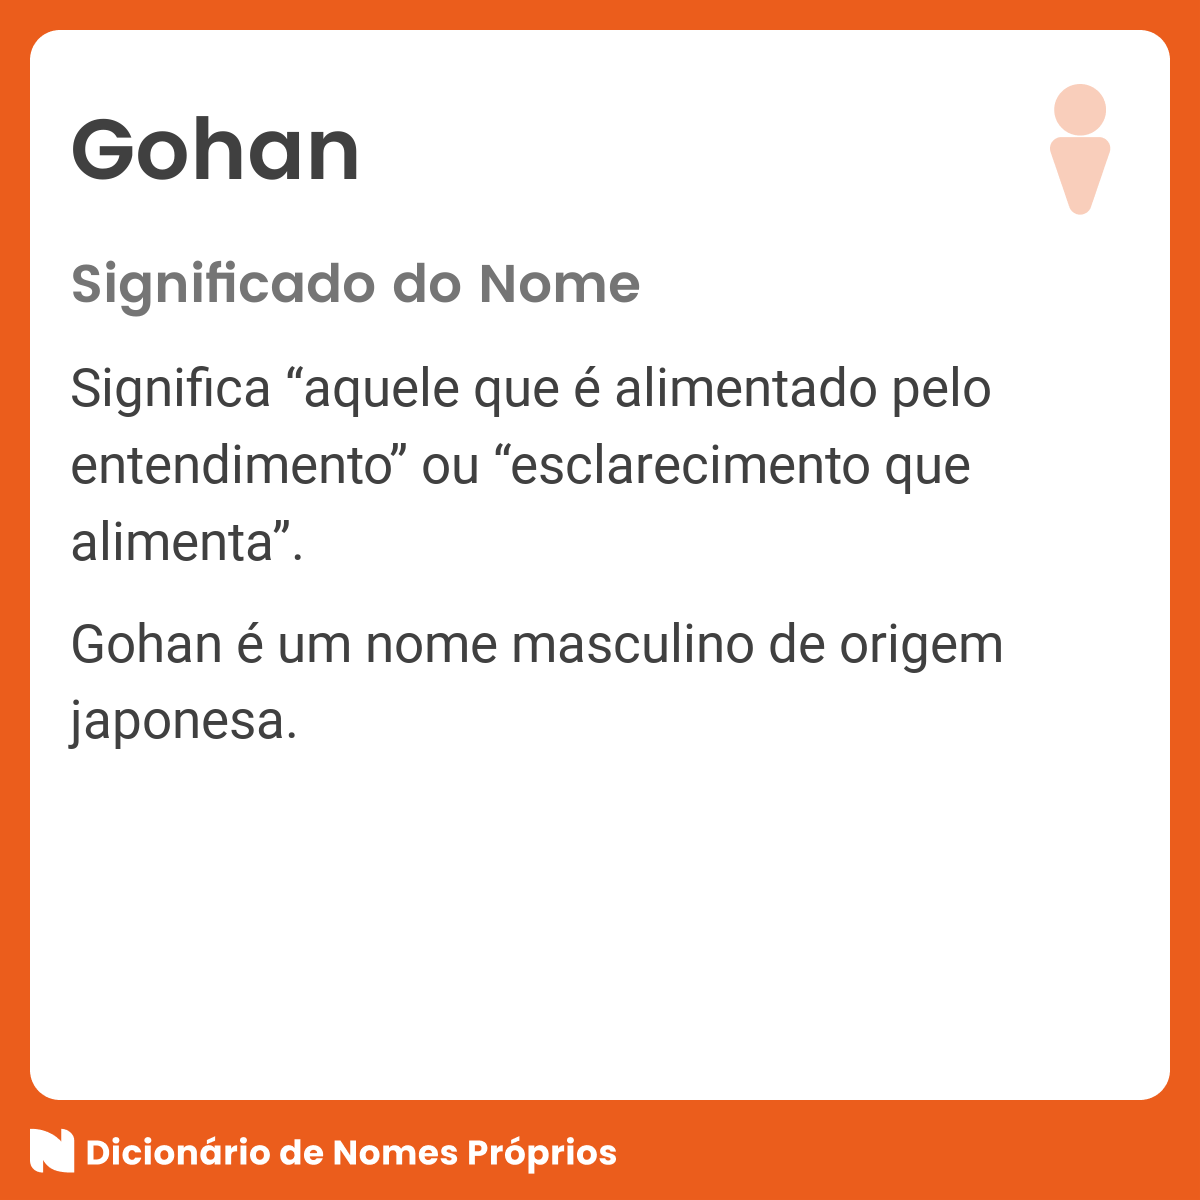 Este é o verdadeiro significado do nome do Gohan em Dragon Ball